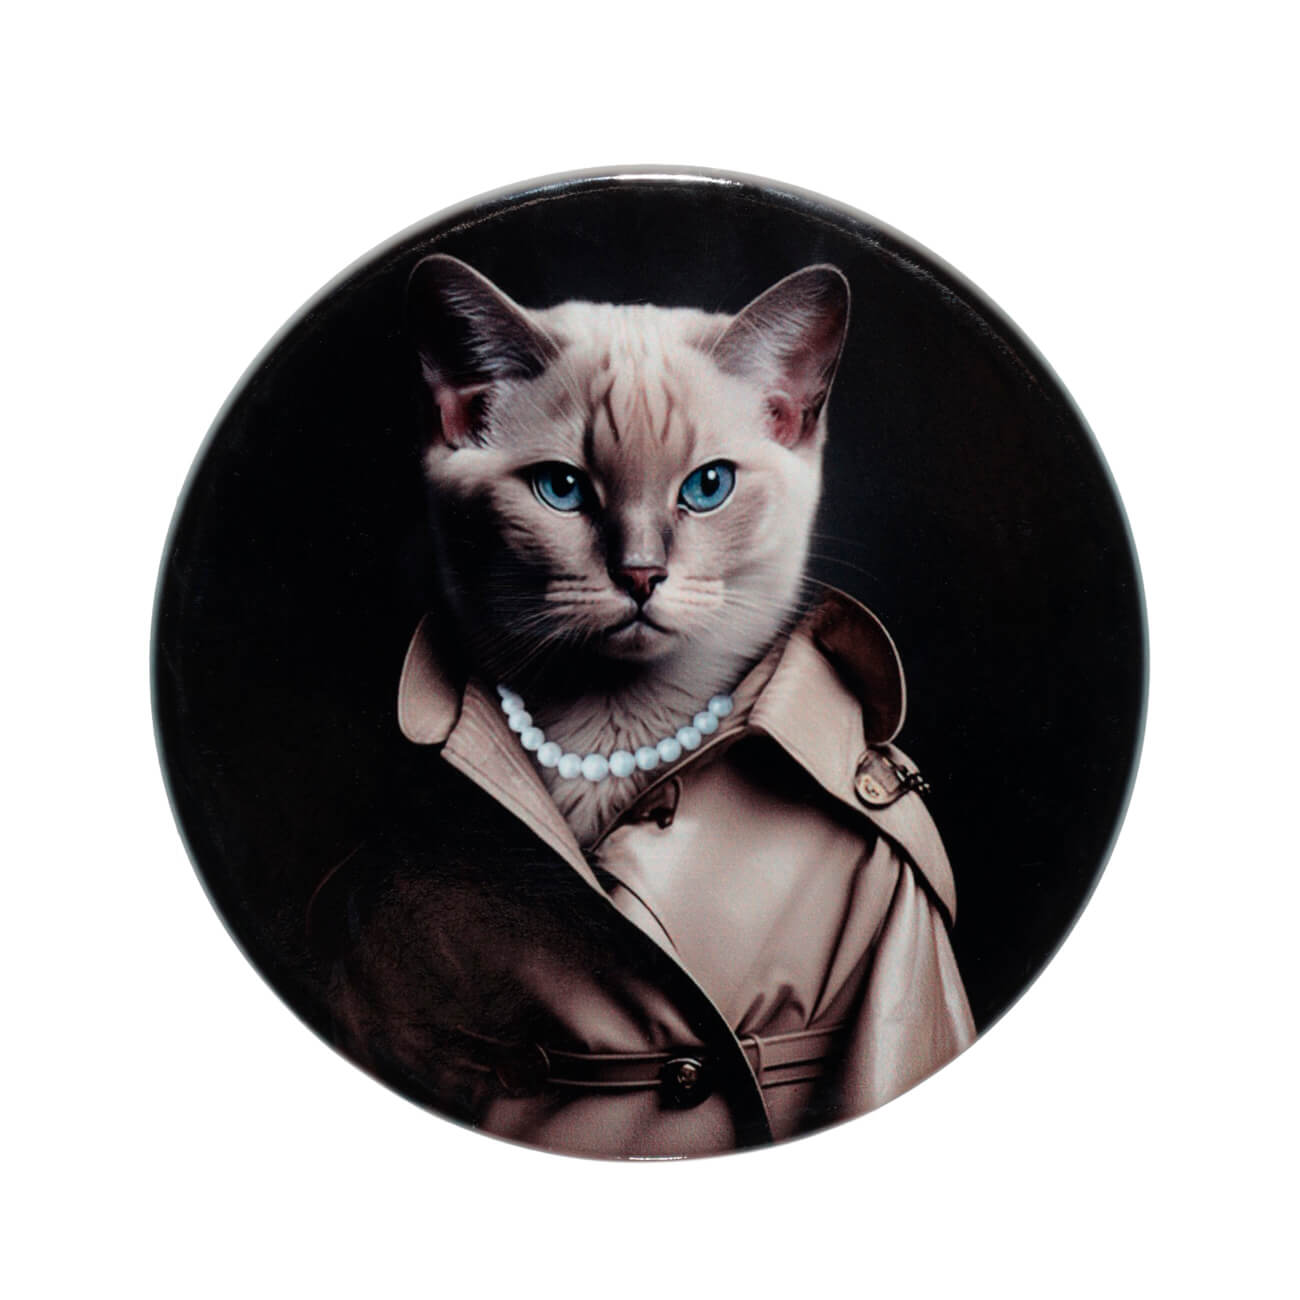 Подставка под кружку, 11 см, керамика/пробка, круглая, Кошка в пальто, On style